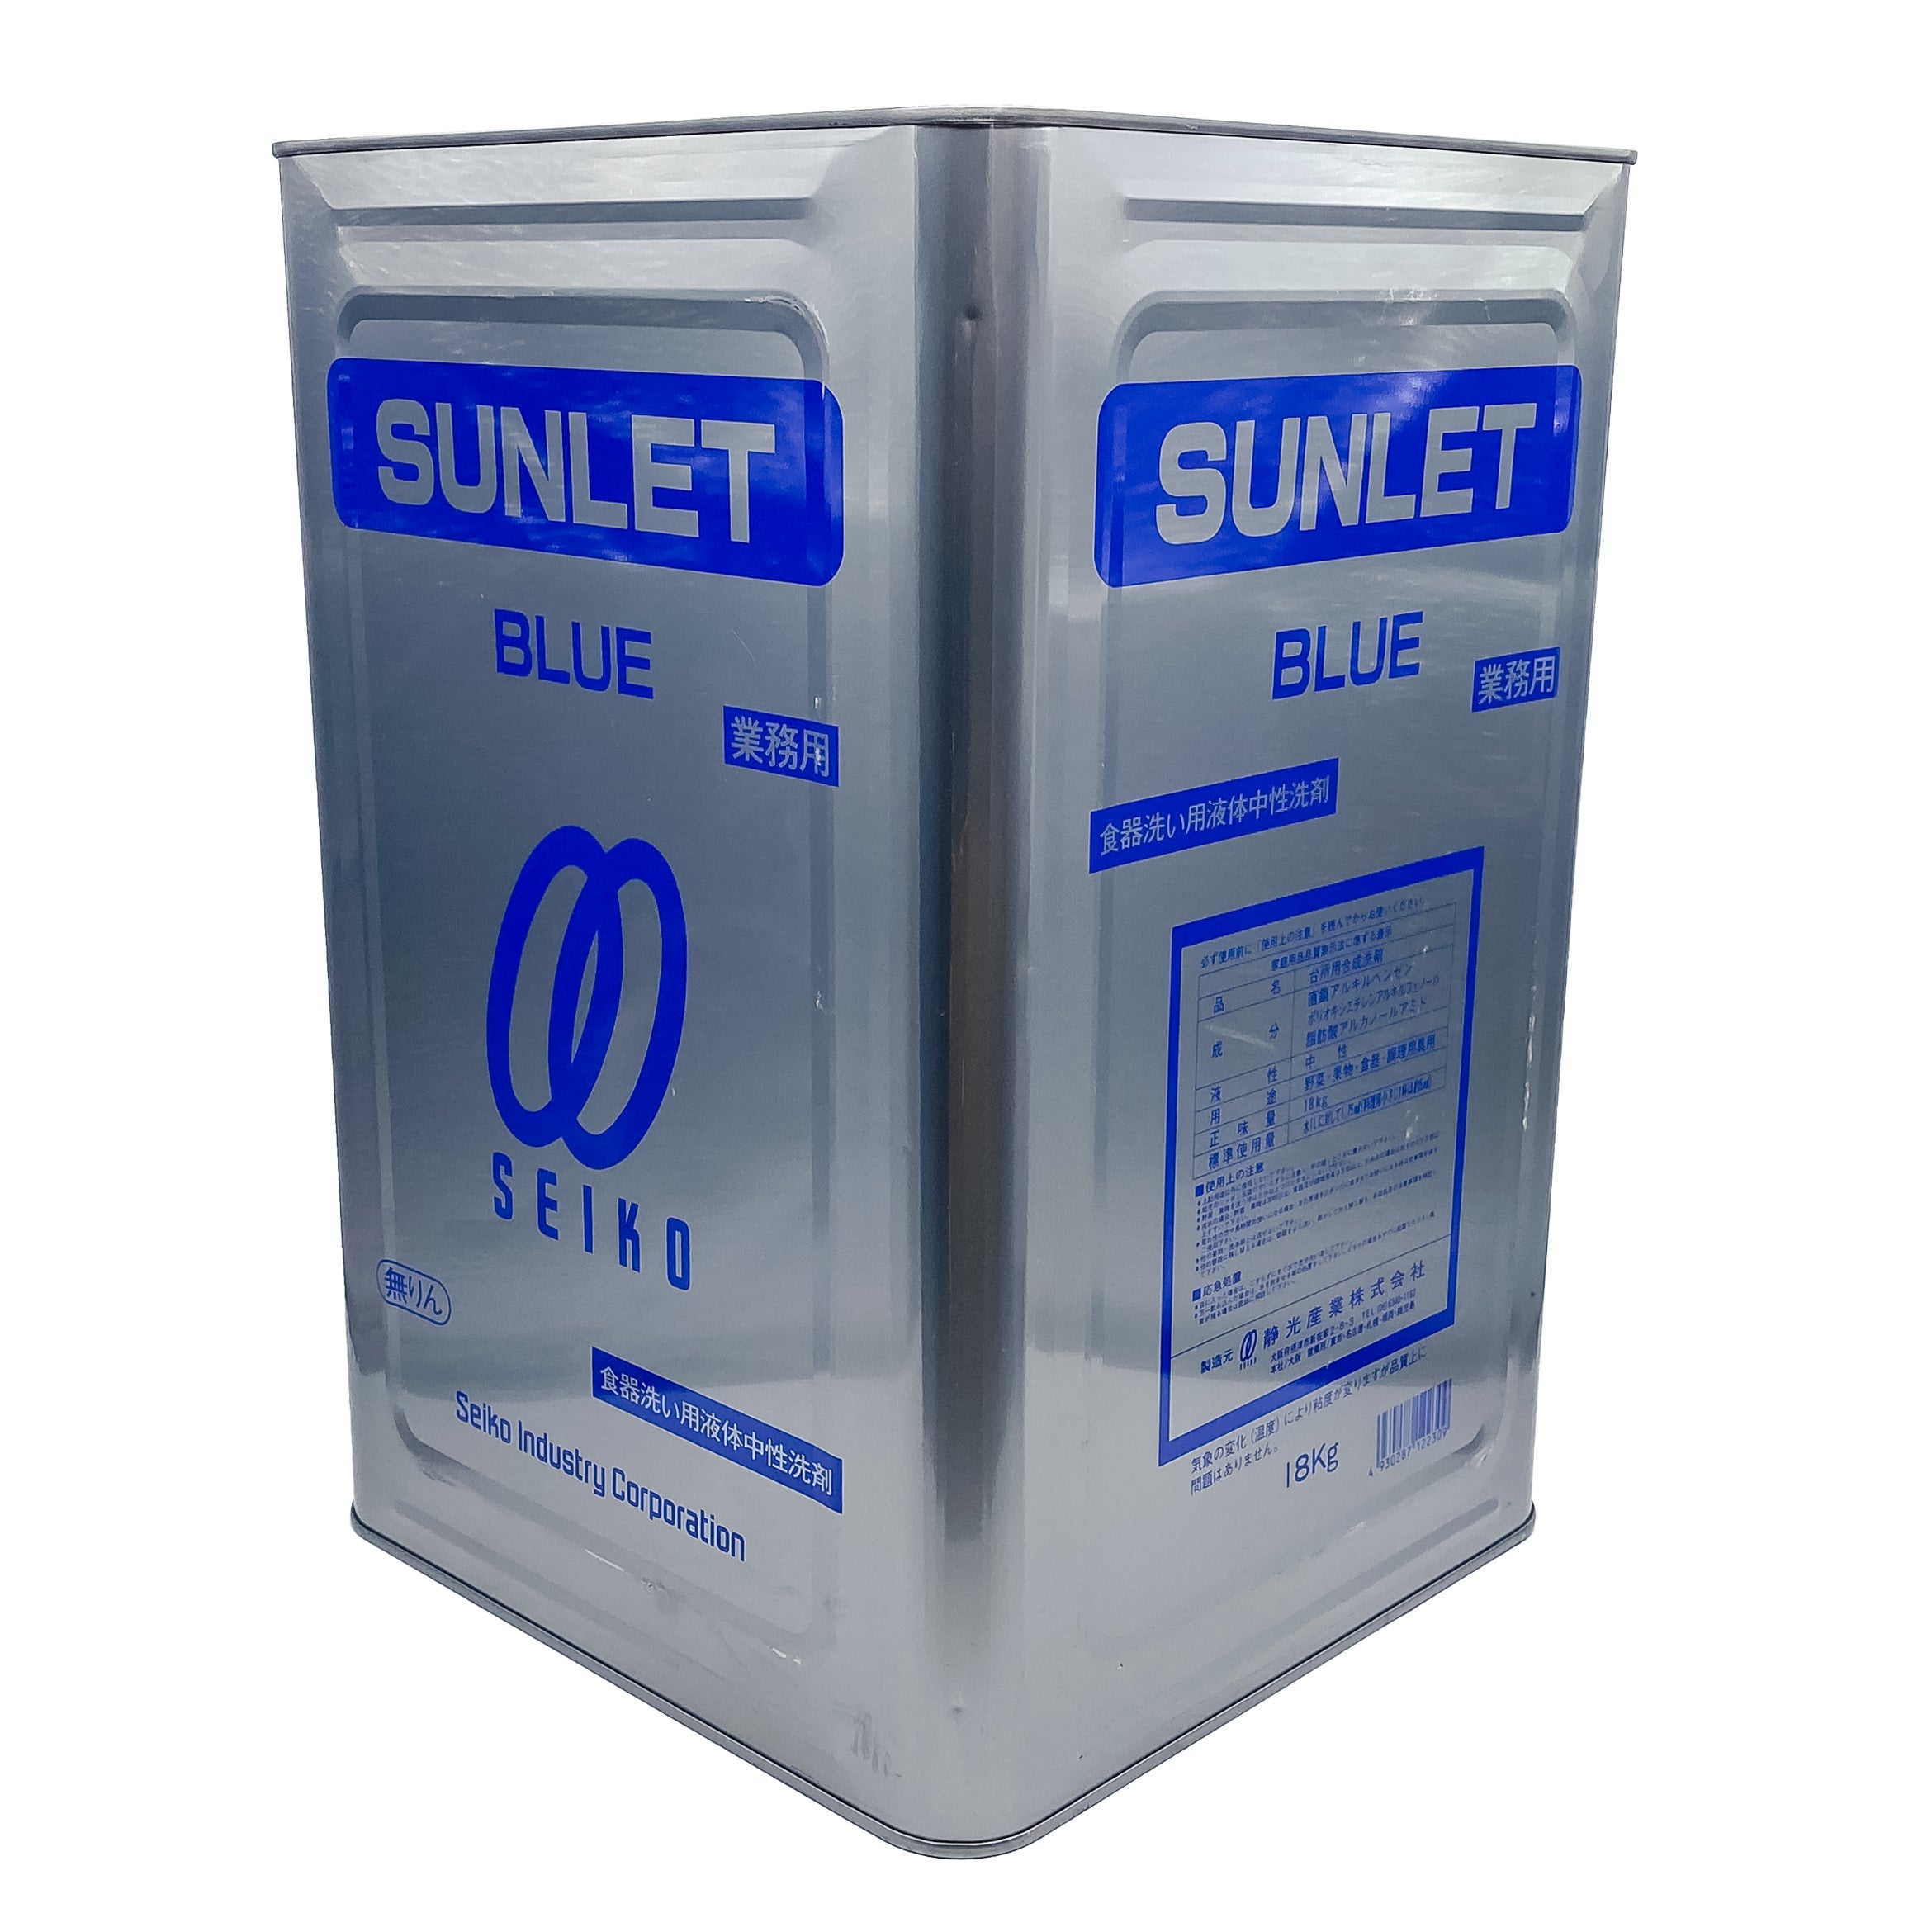 【中性洗剤】静光産業 サンレット ブルー (一斗缶タイプ) 18kg